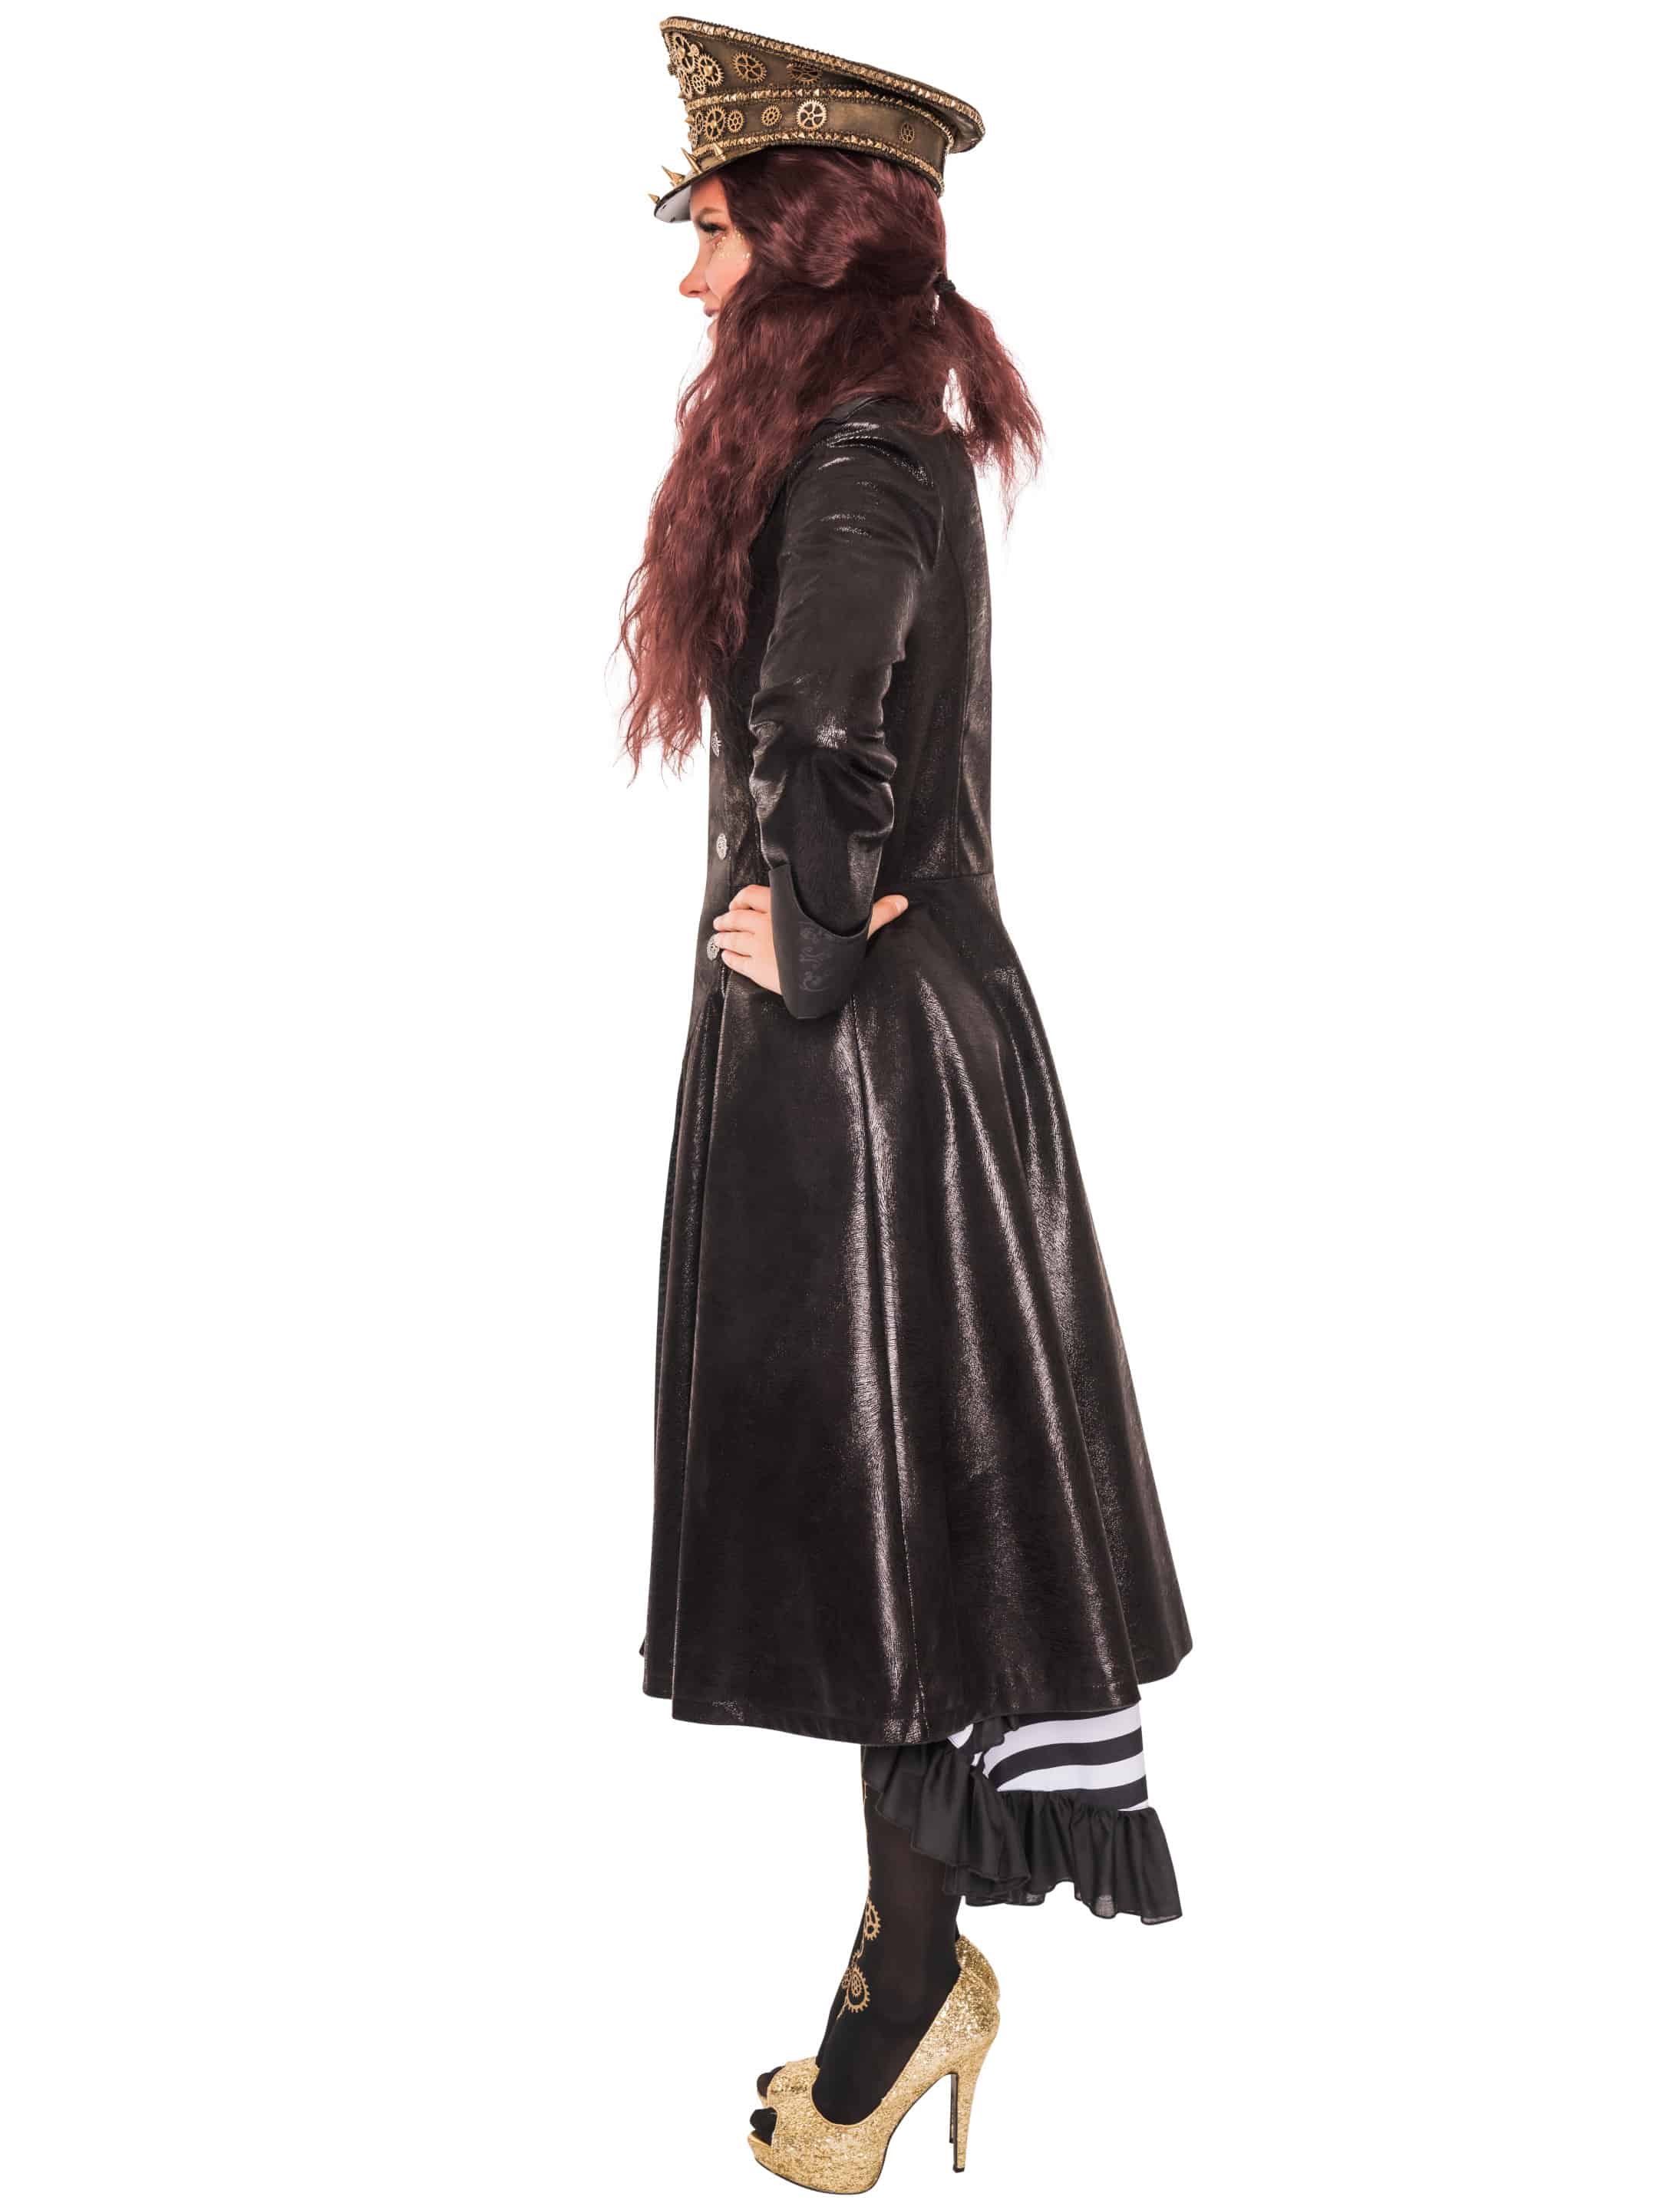 Mantel Steampunk Damen schwarz M